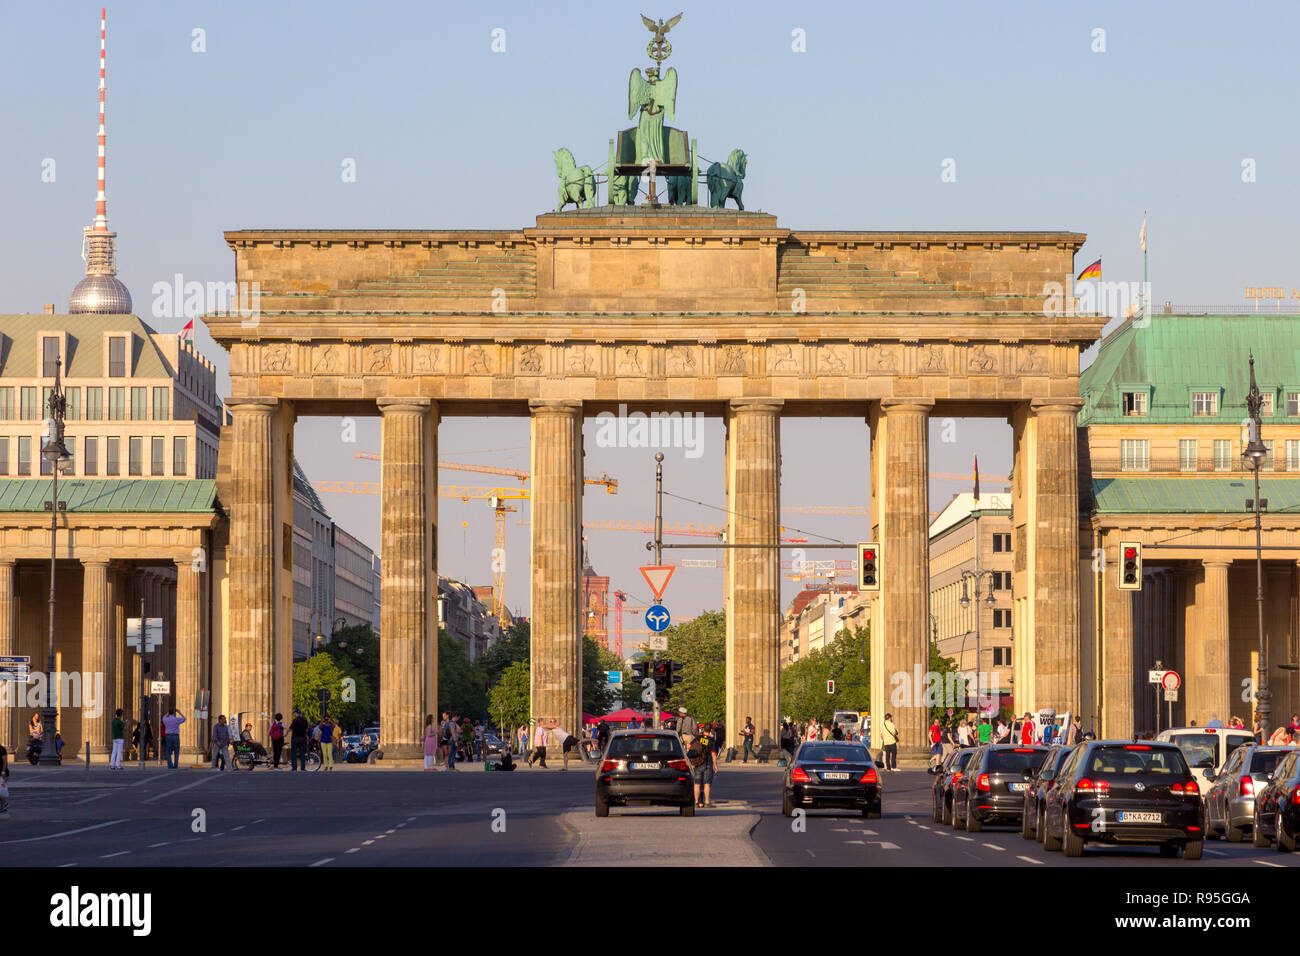 Berlino, Germania - 22 Maggio 2014: il famoso punto di riferimento tedesco e il simbolo nazionale Brandenburger Tor (Porta di Brandeburgo a Berlino. Foto Stock